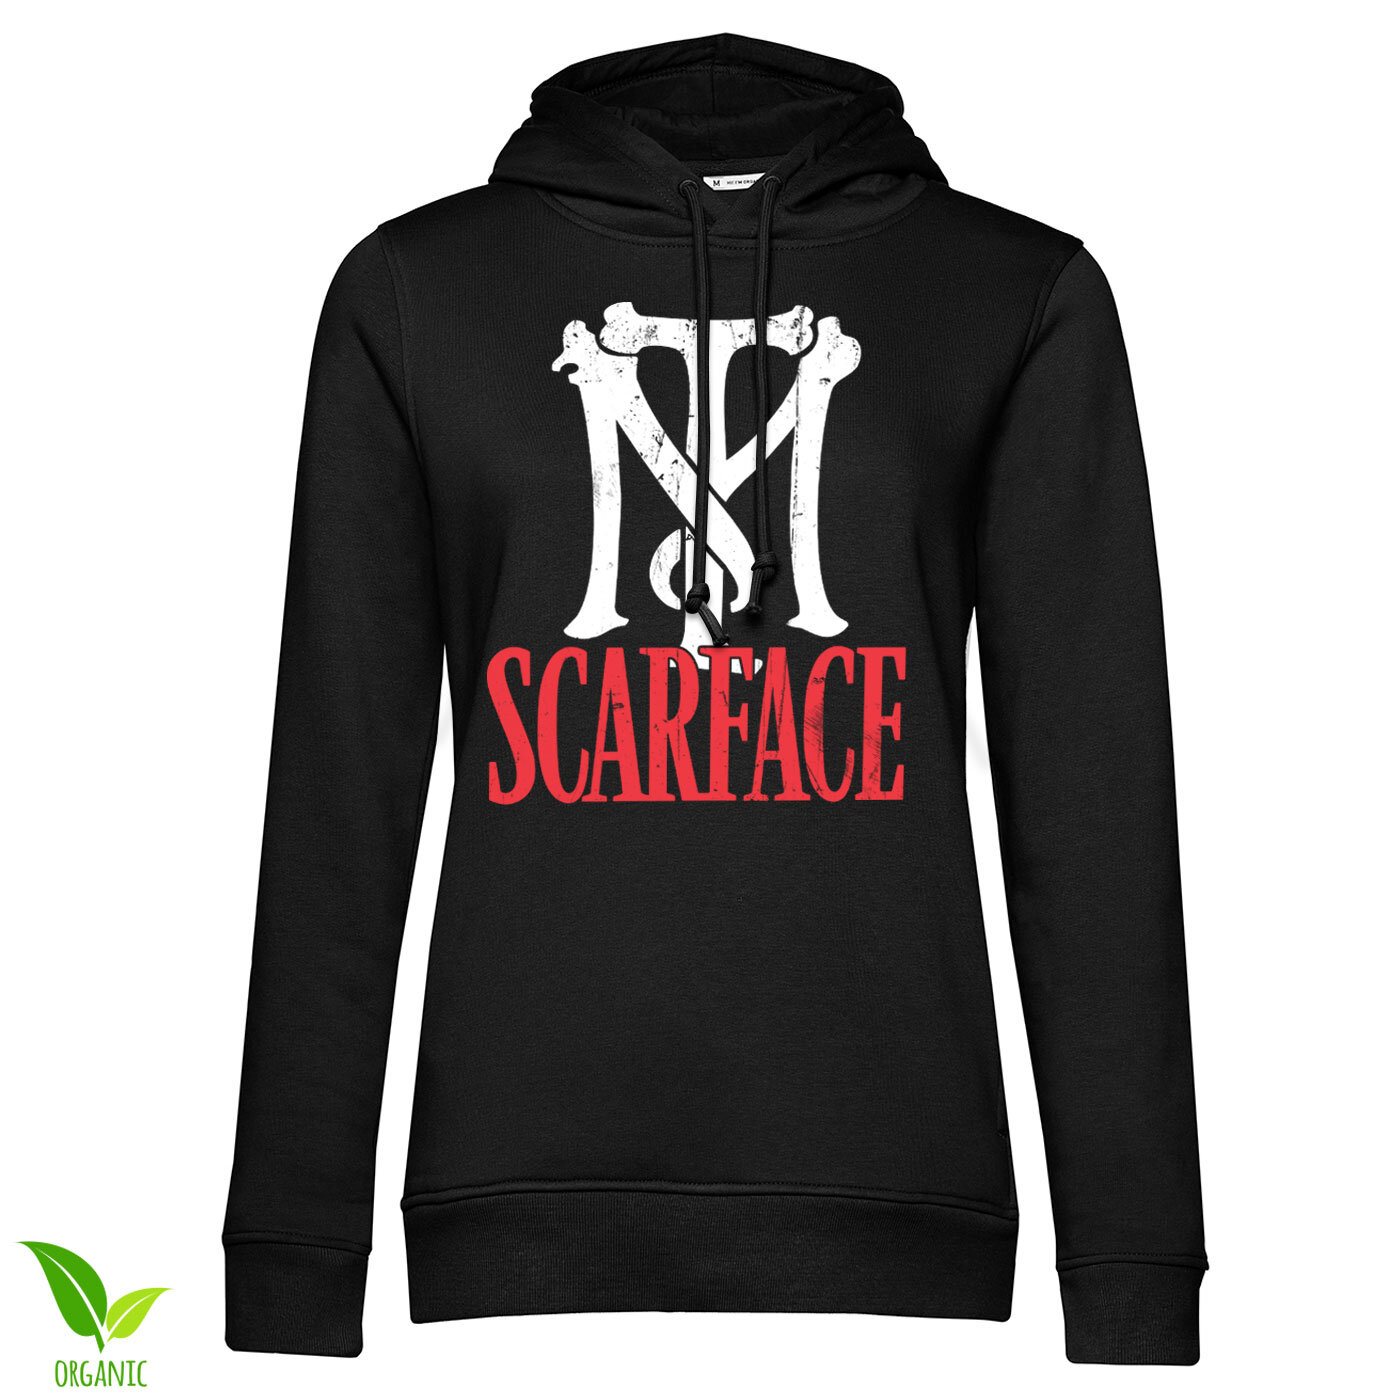 Scarface TM Logo Girls Hoodie